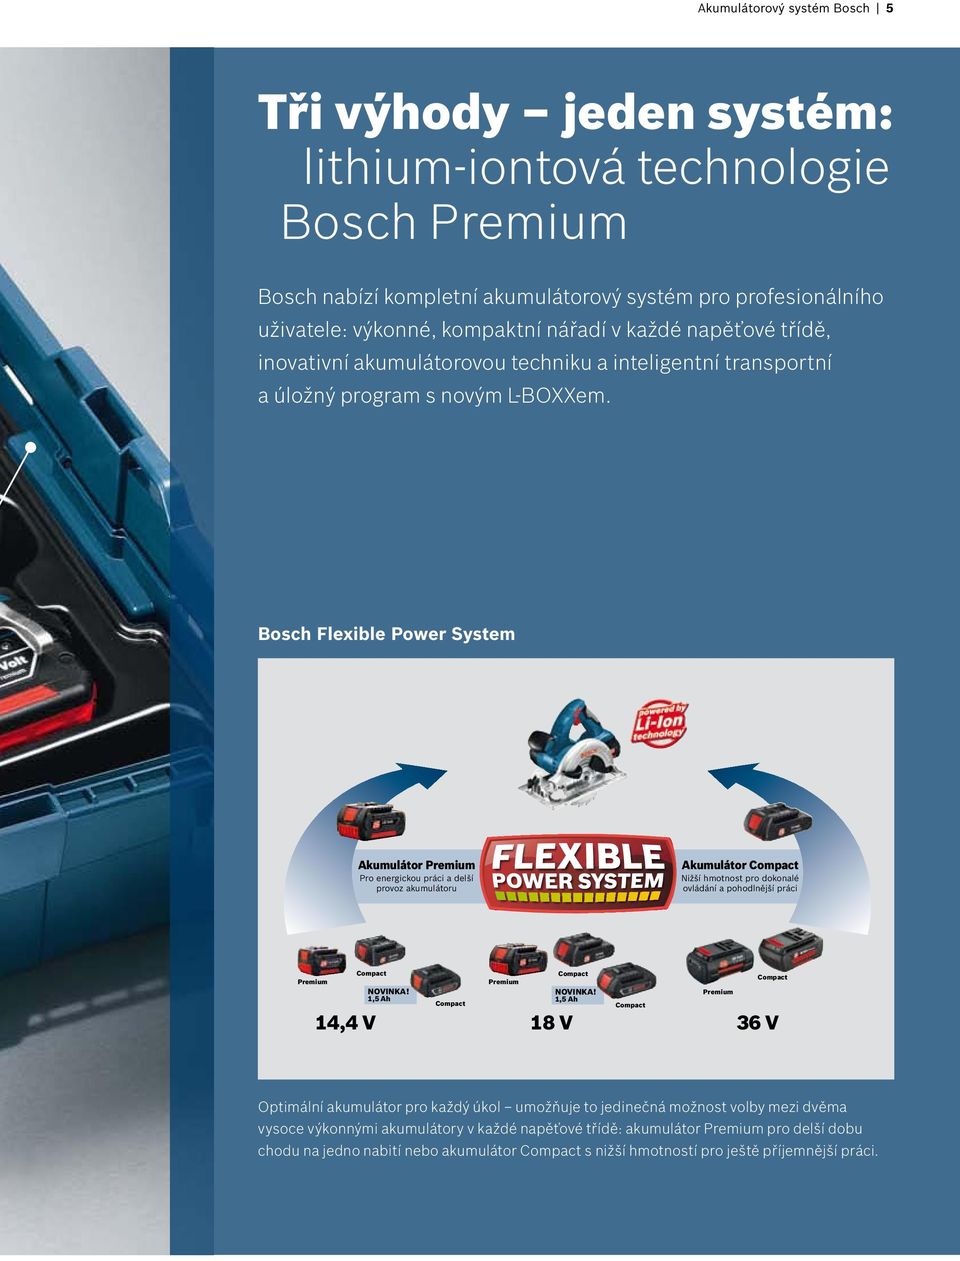 Bosch Flexible Power System Akumulátor Premium Pro energickou práci a delší provoz akumulátoru Akumulátor Compact Nižší hmotnost pro dokonalé ovládání a pohodlnější práci Premium Compact 14,4 V